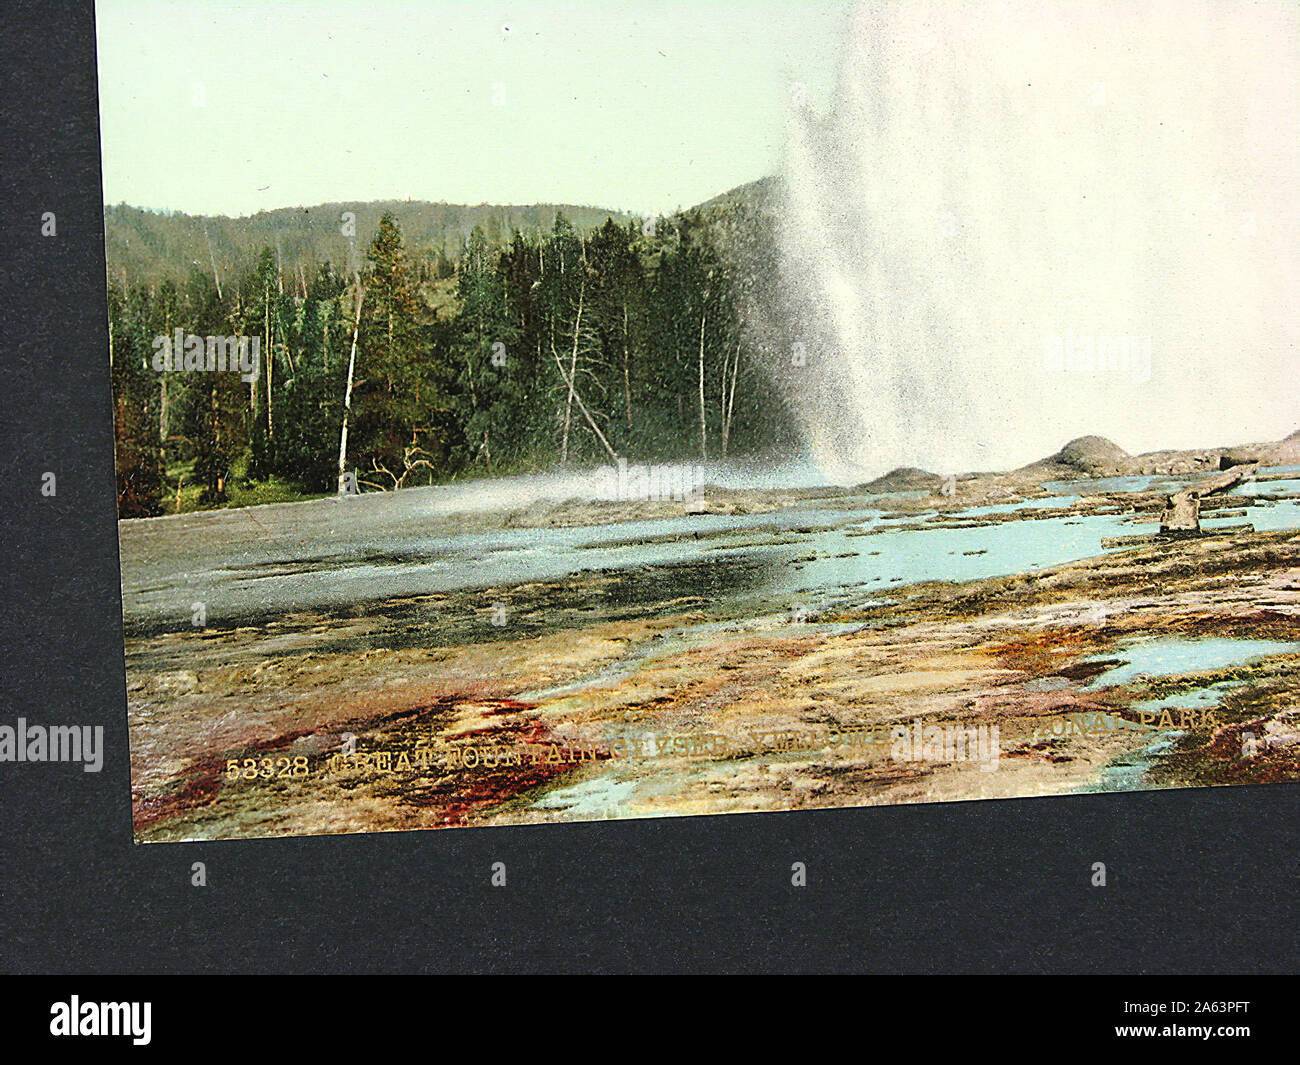 Schön und vintage Album mit frühen Photochrom style colorized Fotografien des Yellowstone National Park. Stockfoto